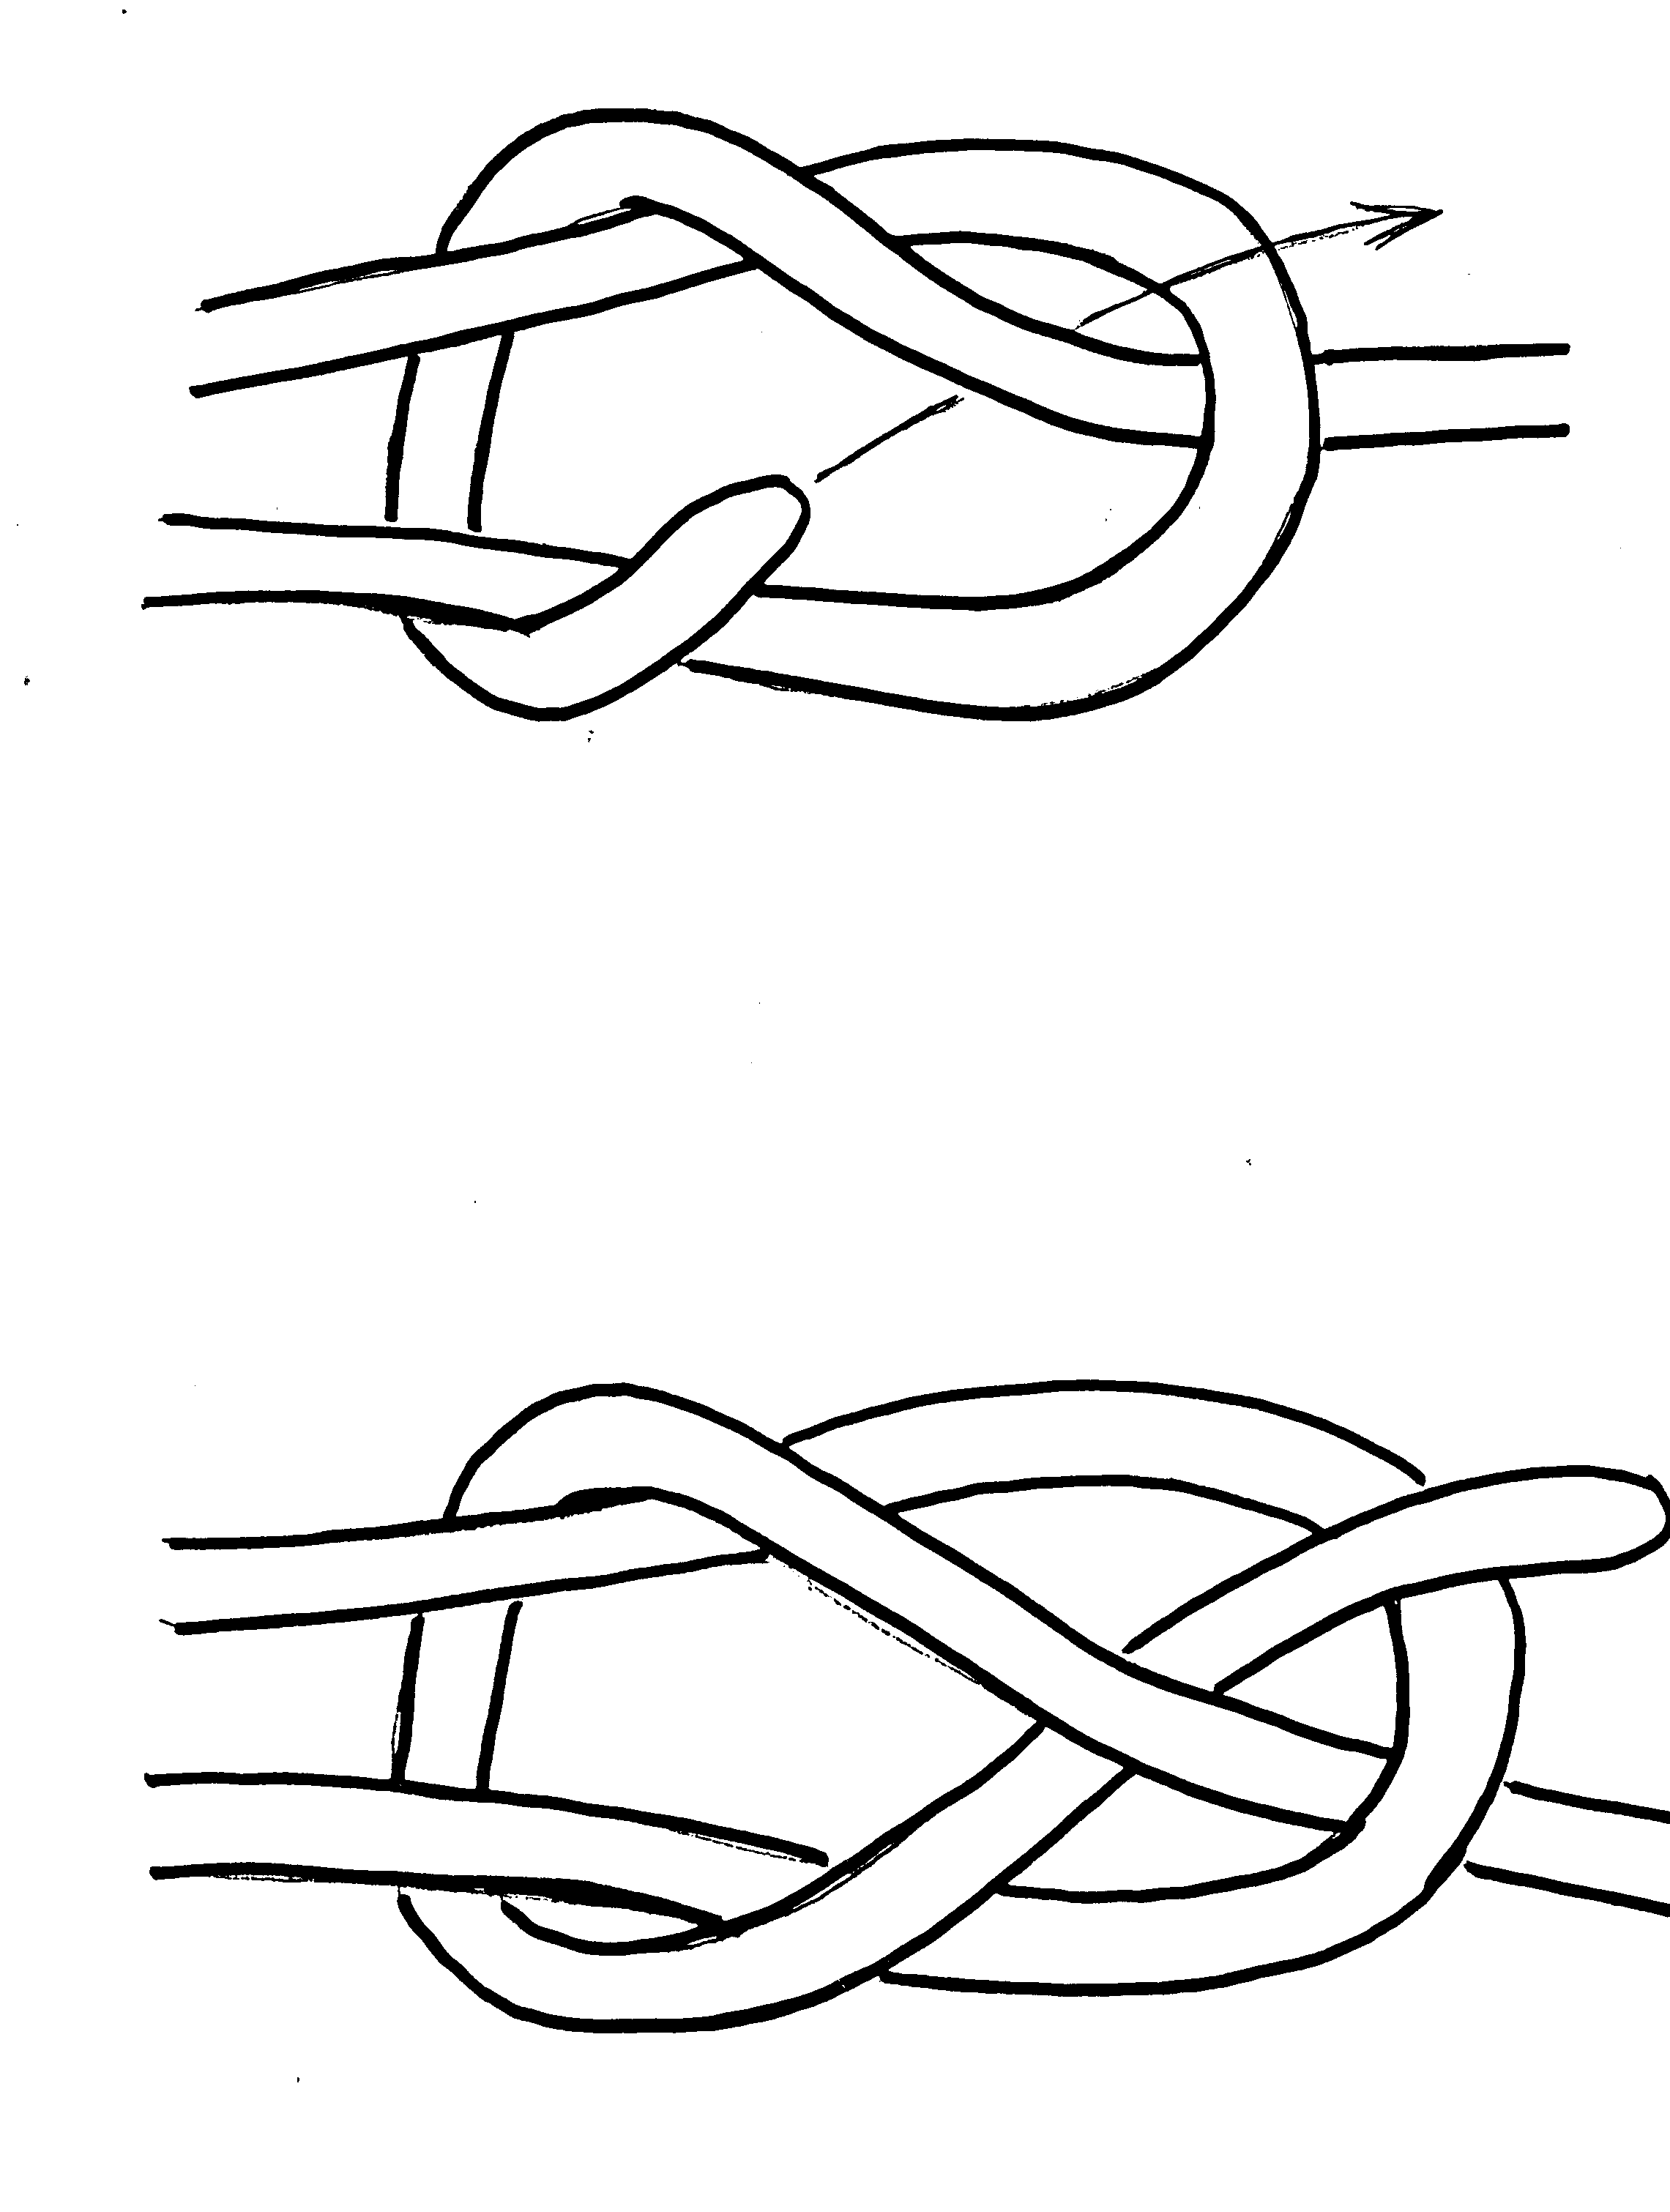 Ткацкие узлы: как завязывать, схема. незаметный узел для связывания нитей